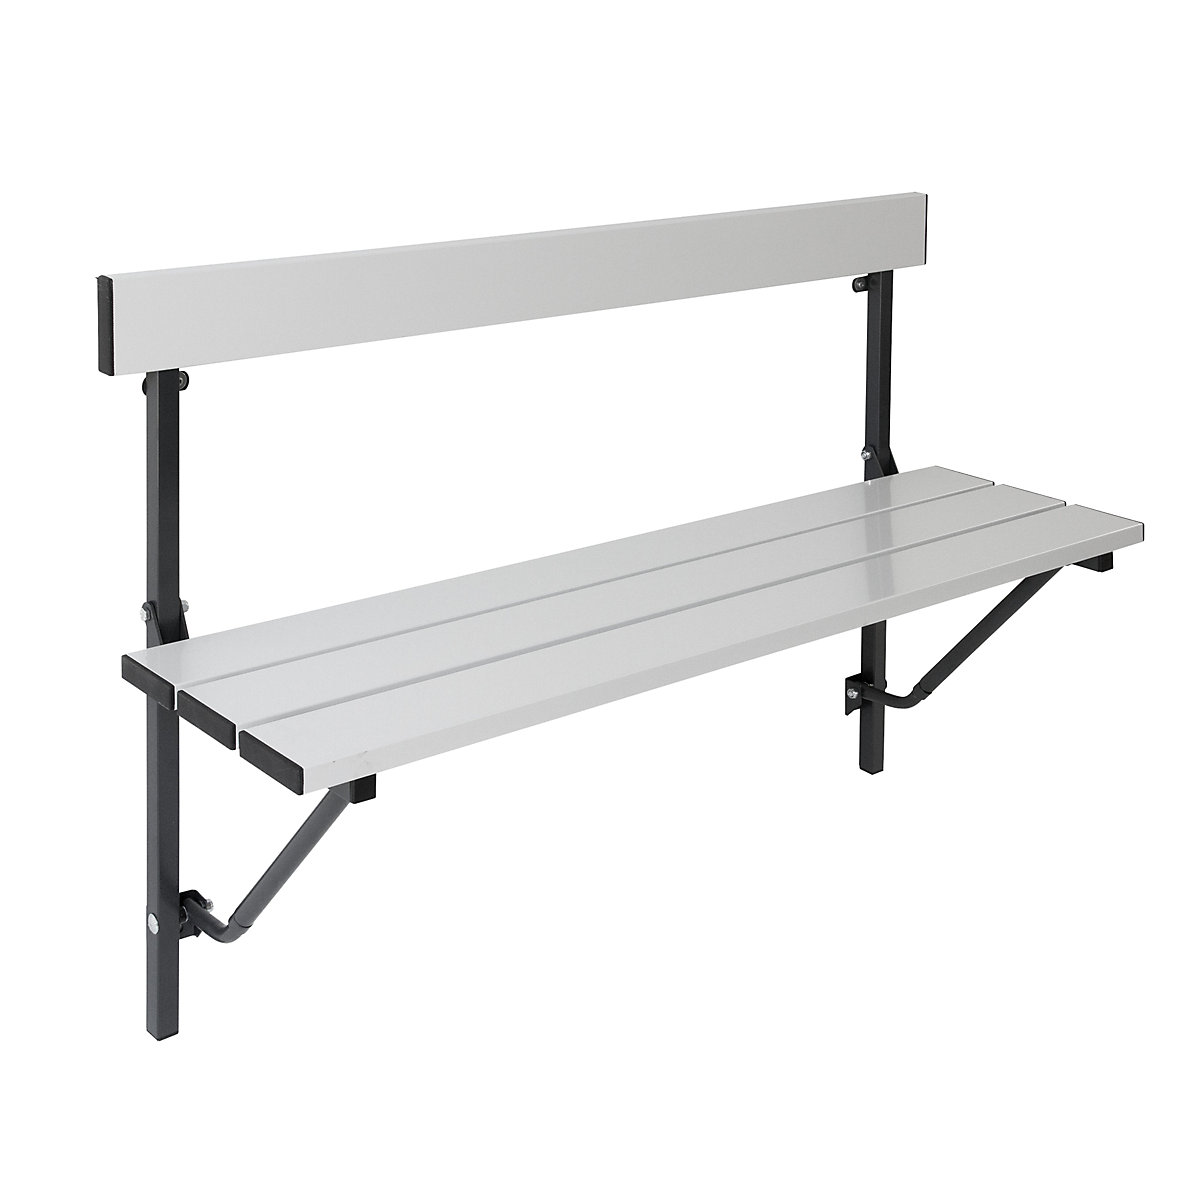 Sypro – Folding wall-mounted bench, folding, fixed length 1200 mm, with aluminium slats